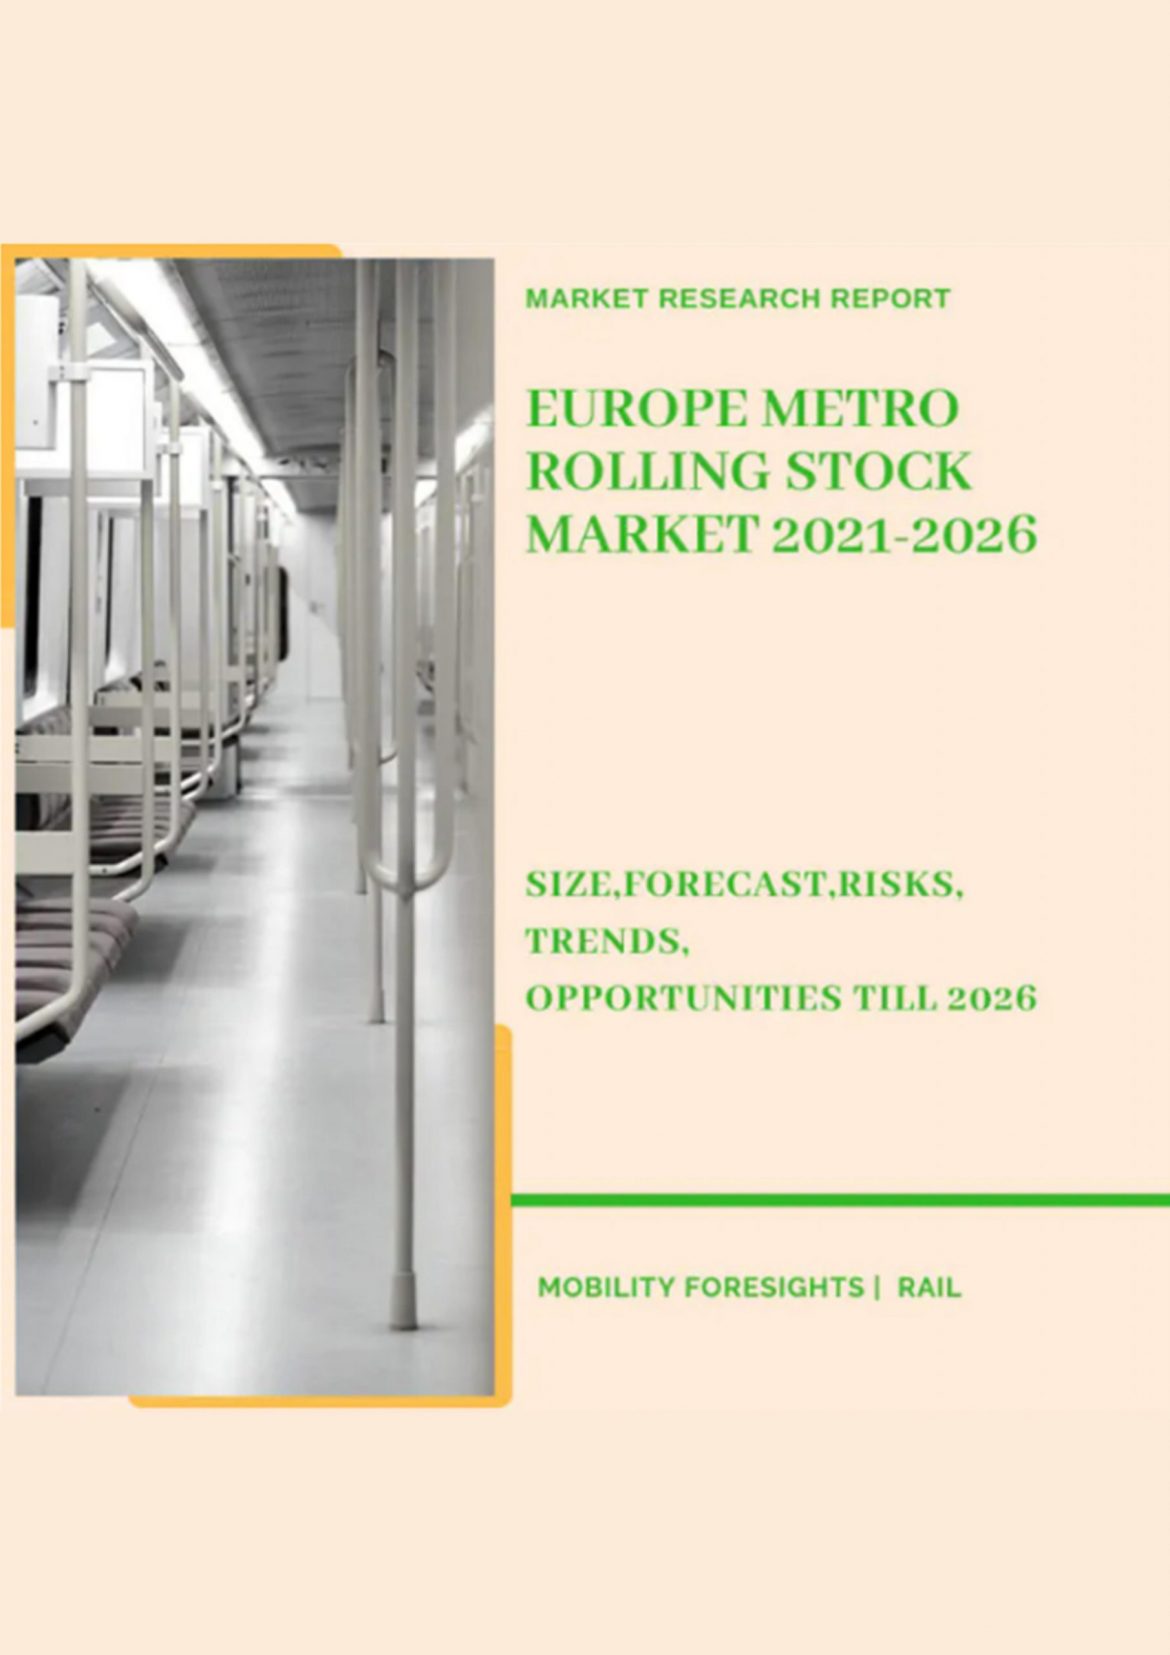 Europe Metro Rolling Stock Market 2021-2026